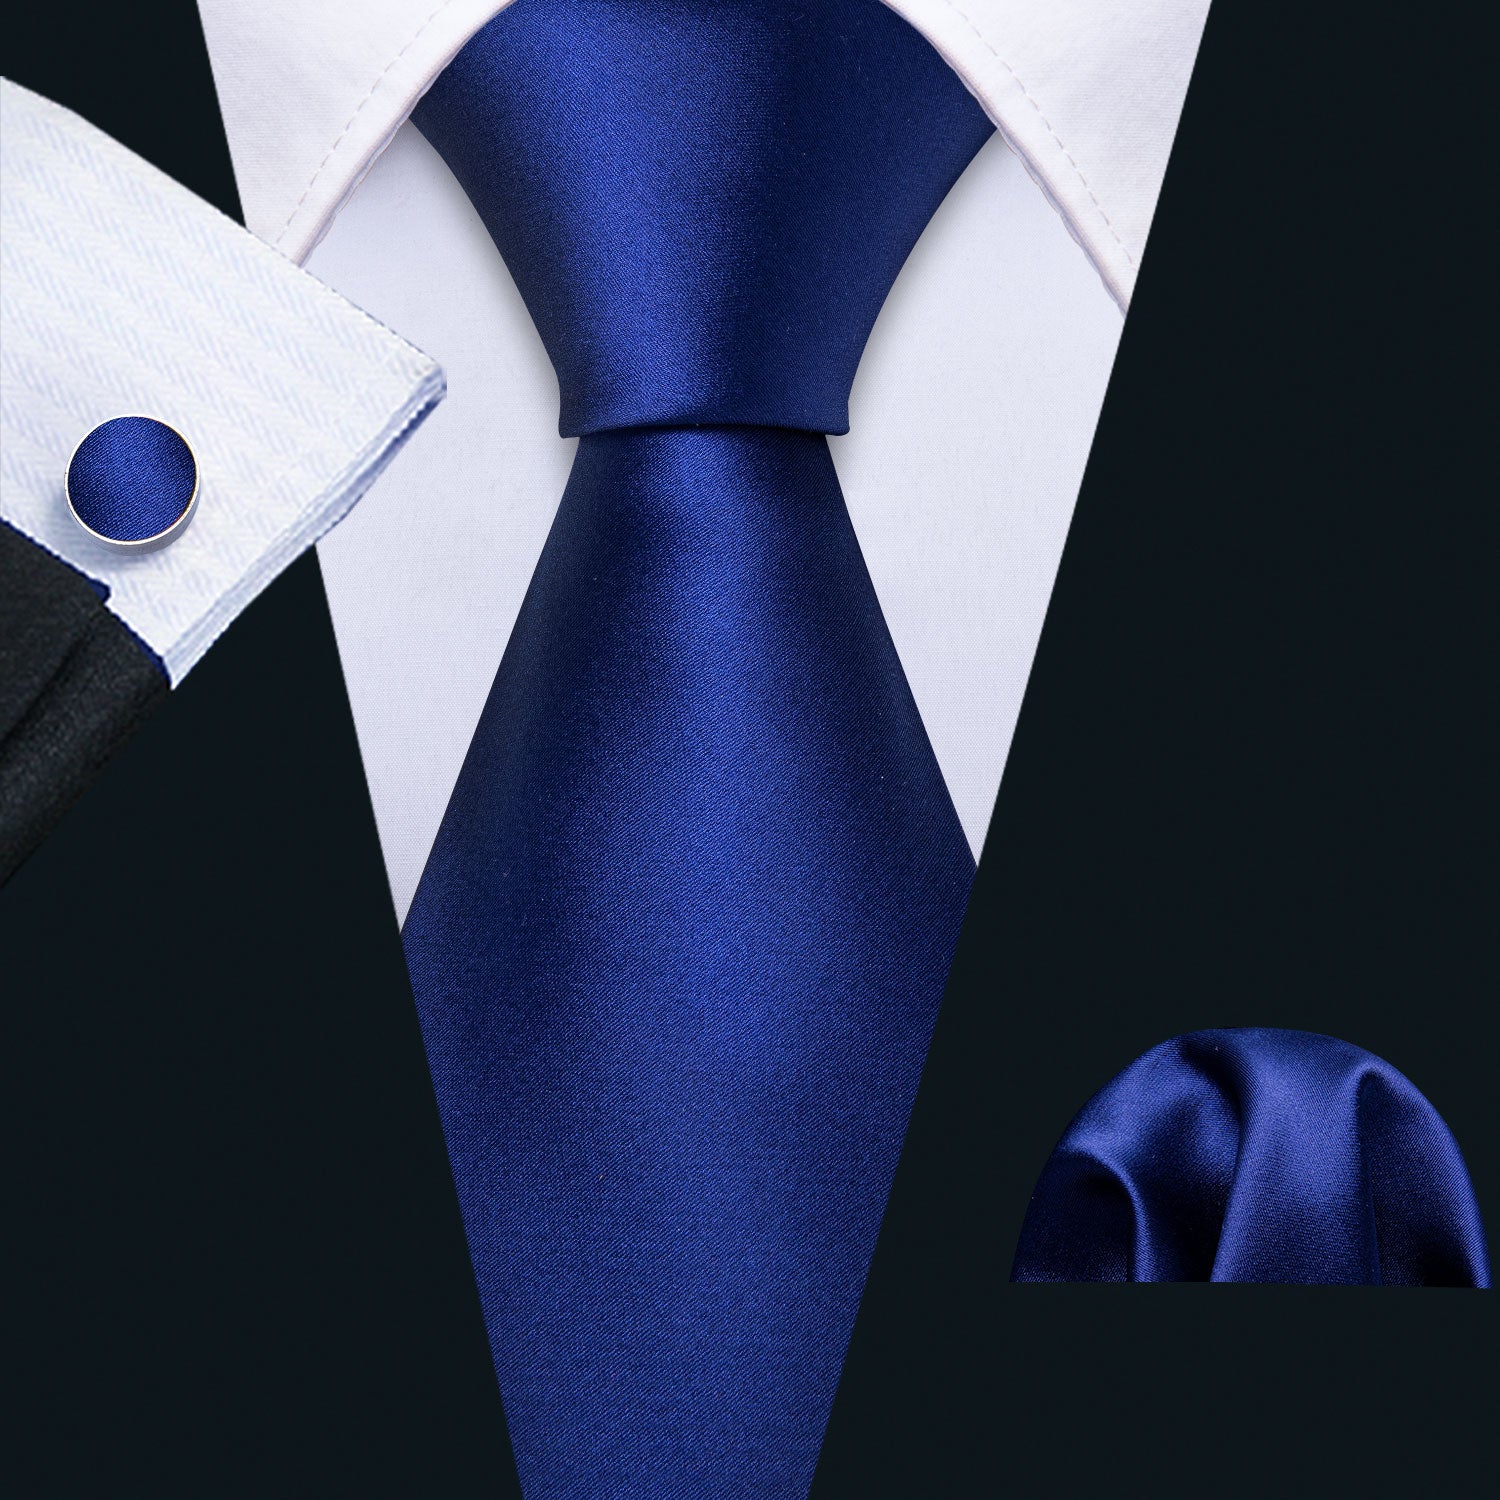 Sapphire Blue Necktie Handkerchief Cufflinks Set